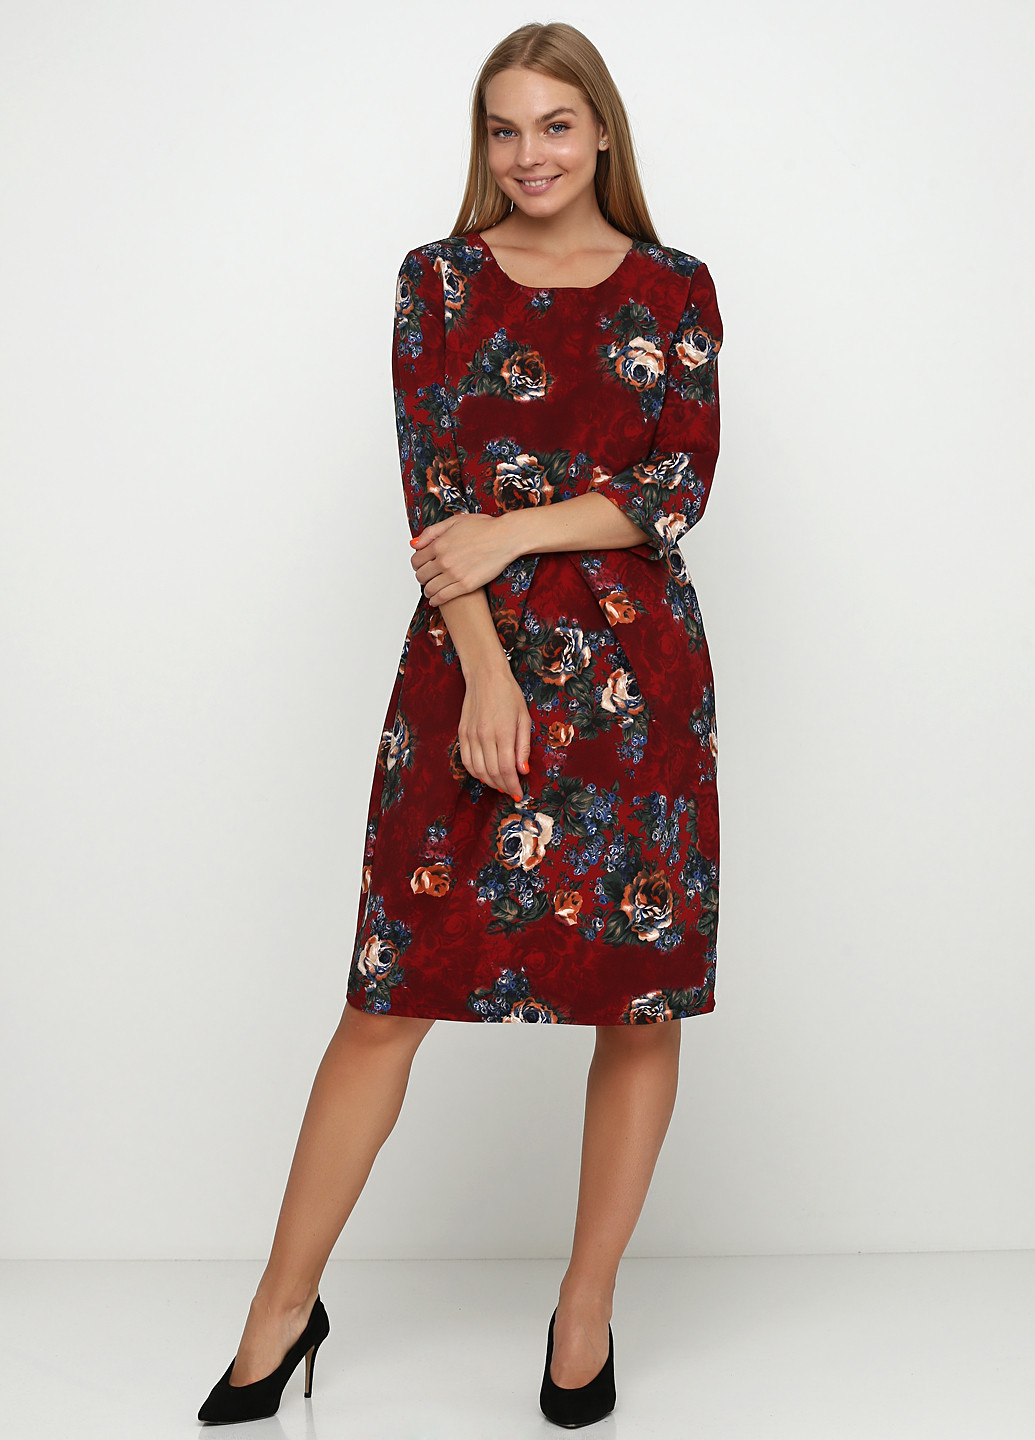 Бордовое деловое платье футляр Imperial с цветочным принтом